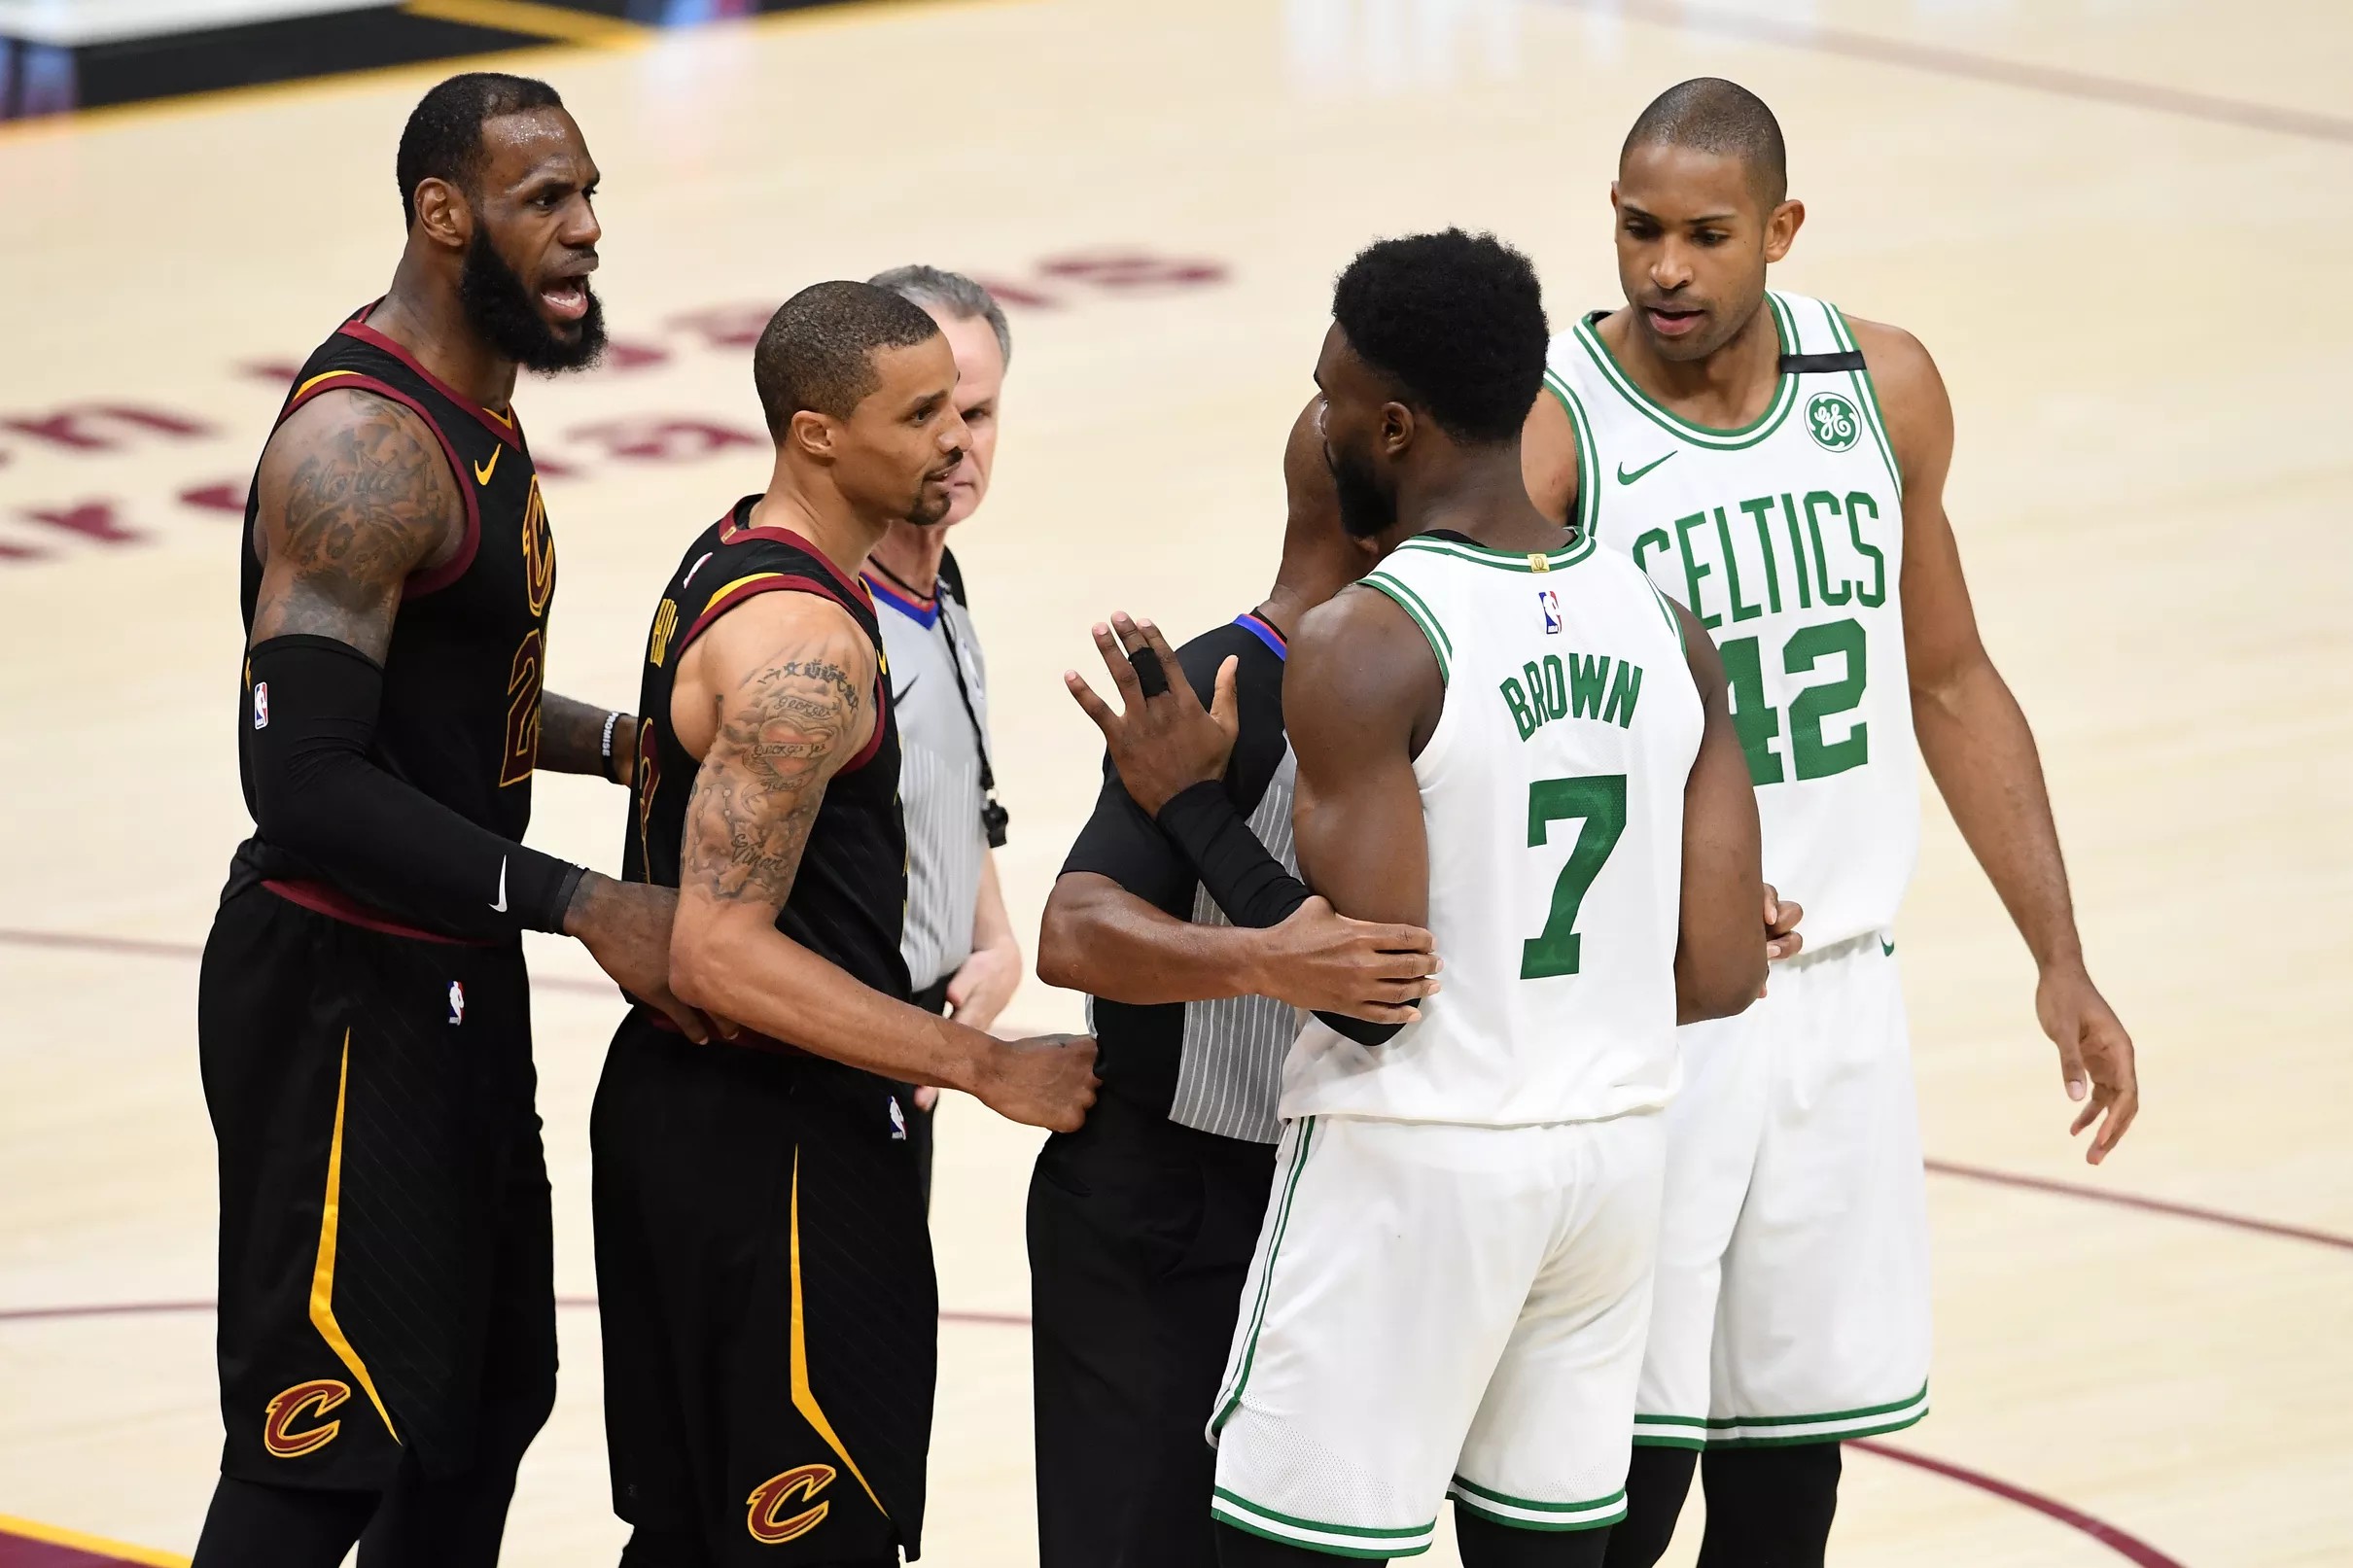 Celtics vs. Cavs, Game 7 Who ya got?